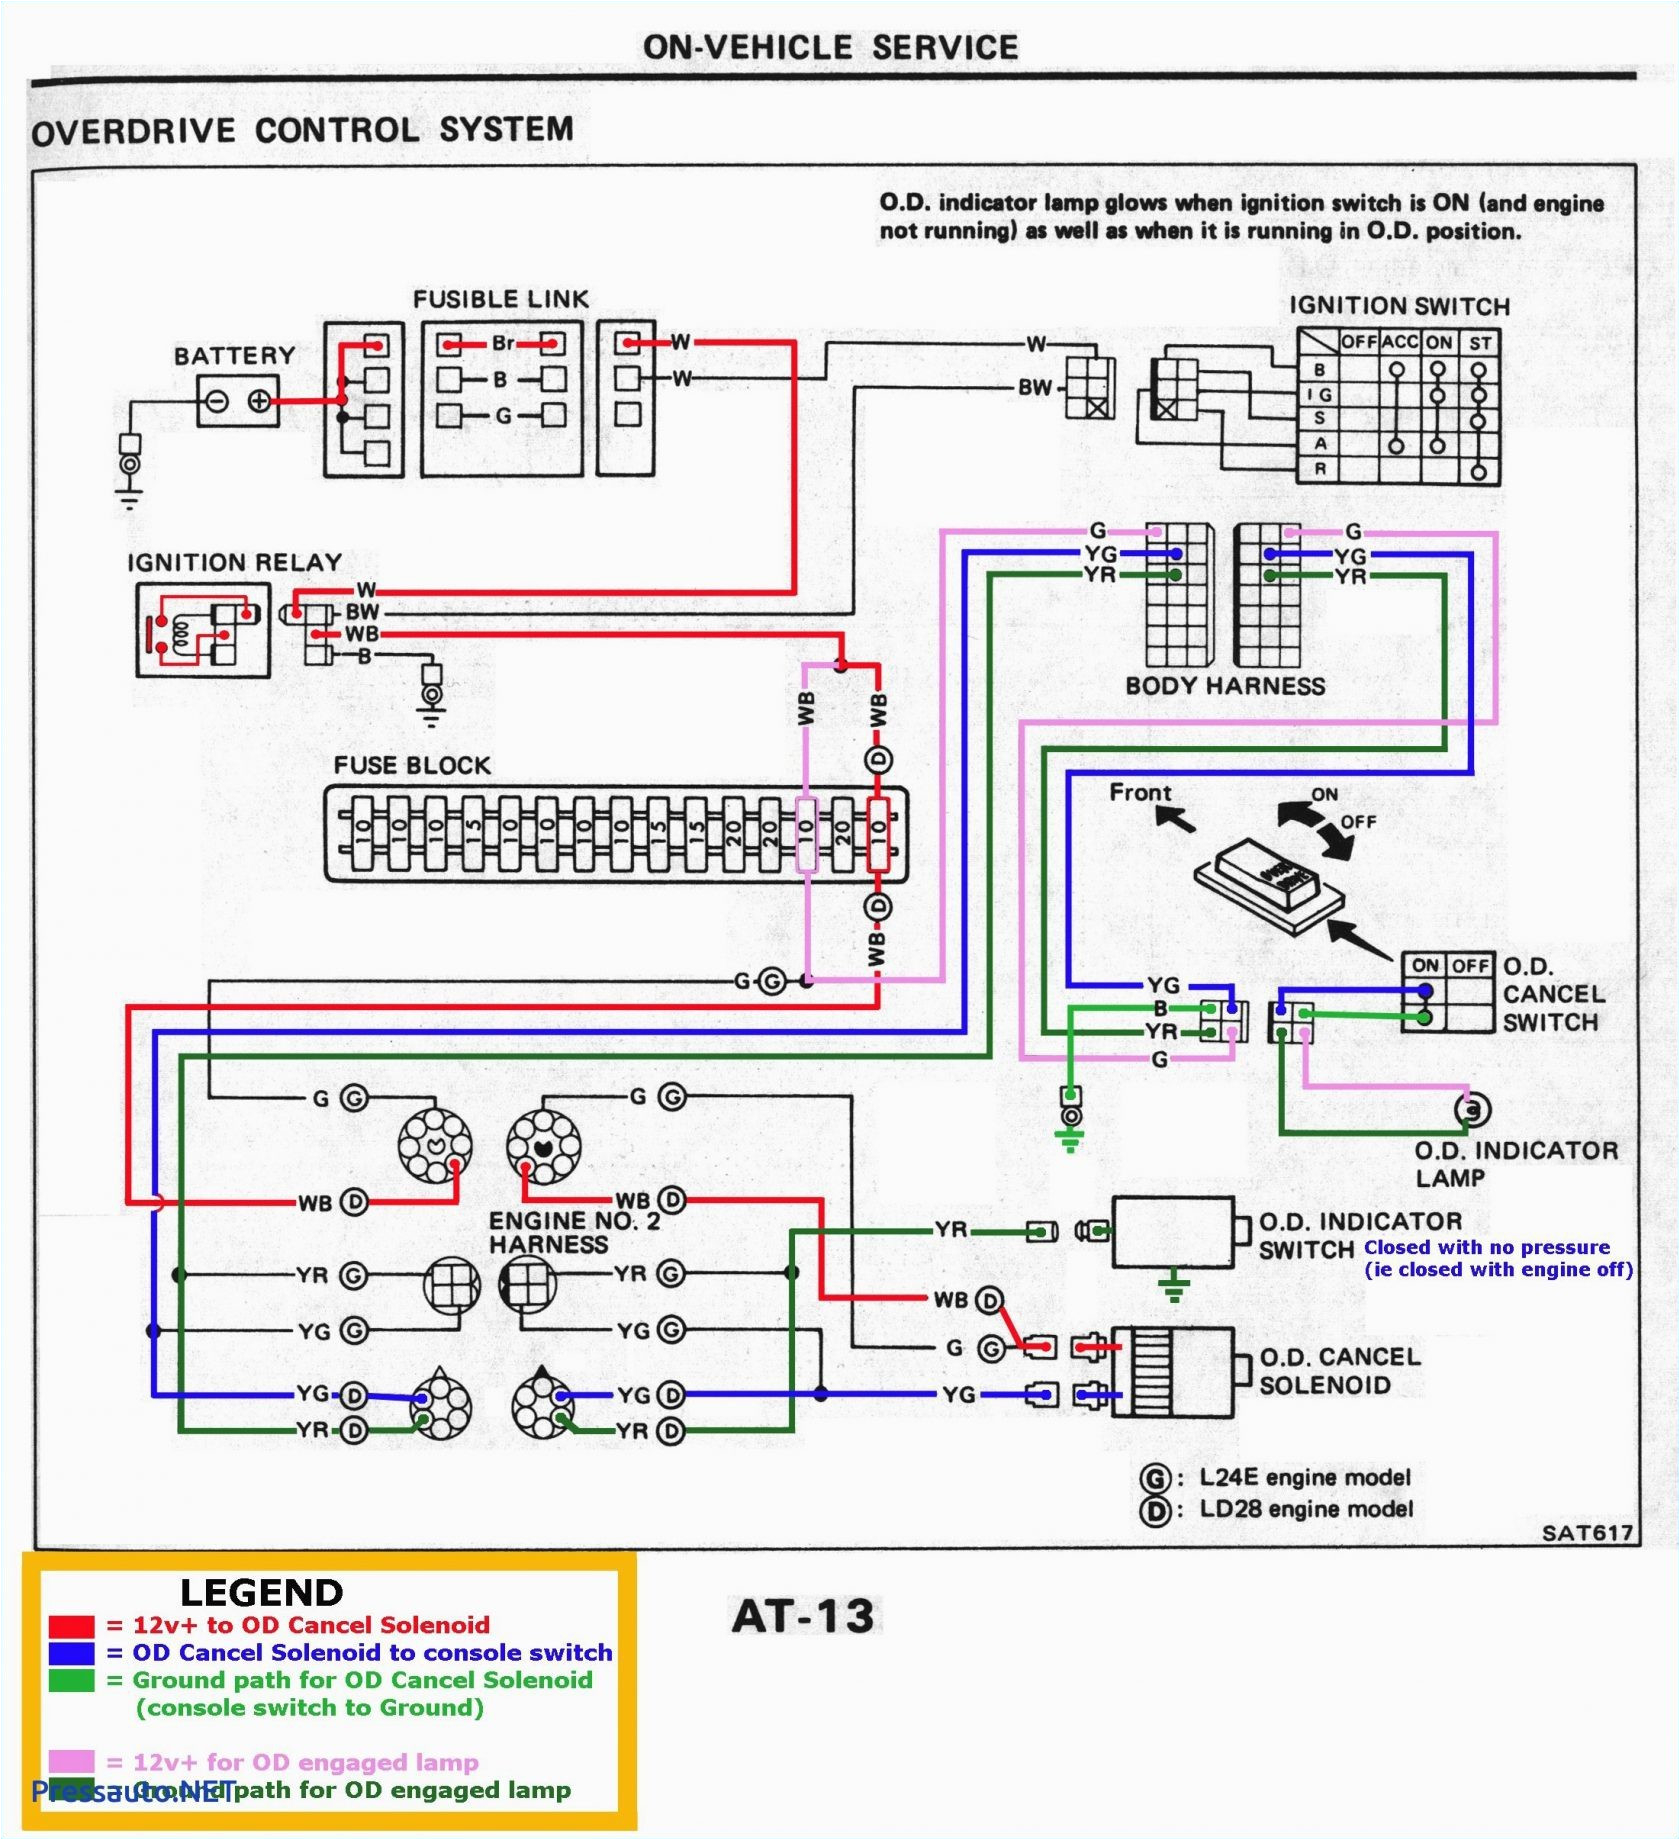 Bosch Voltage Regulator Wiring Diagram Schematic Wiring Diagram Ach 800 Wiring Diagram Features